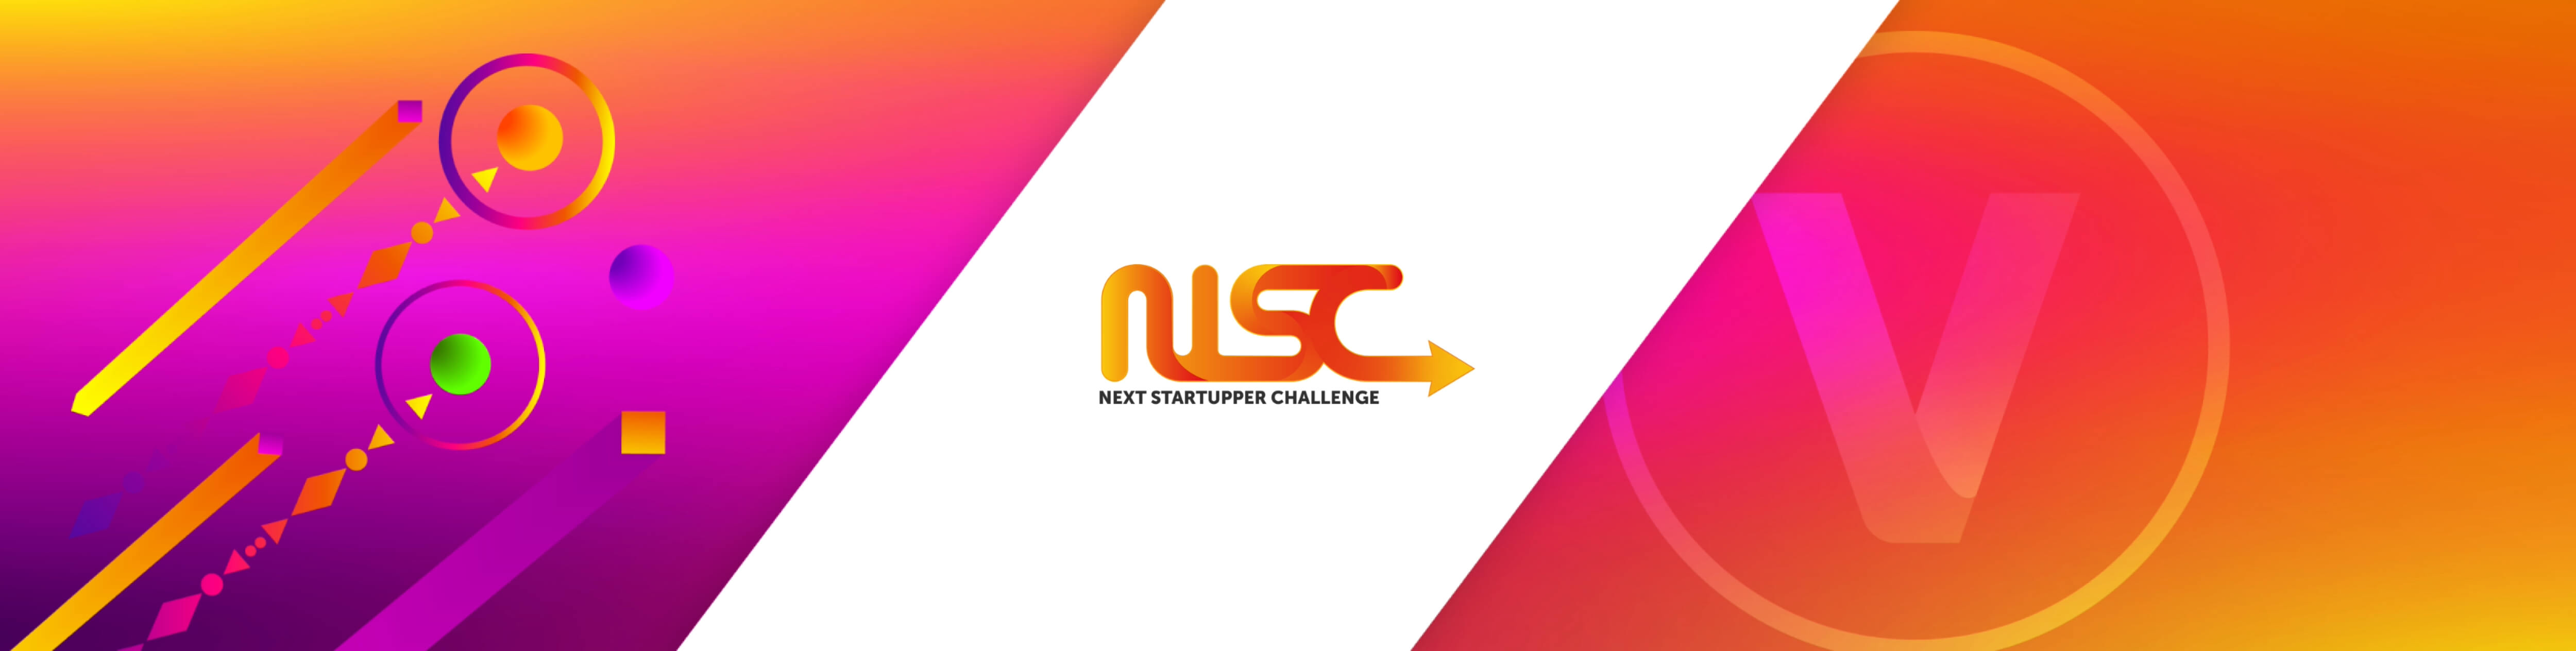 bannière_next_startupper_challenge